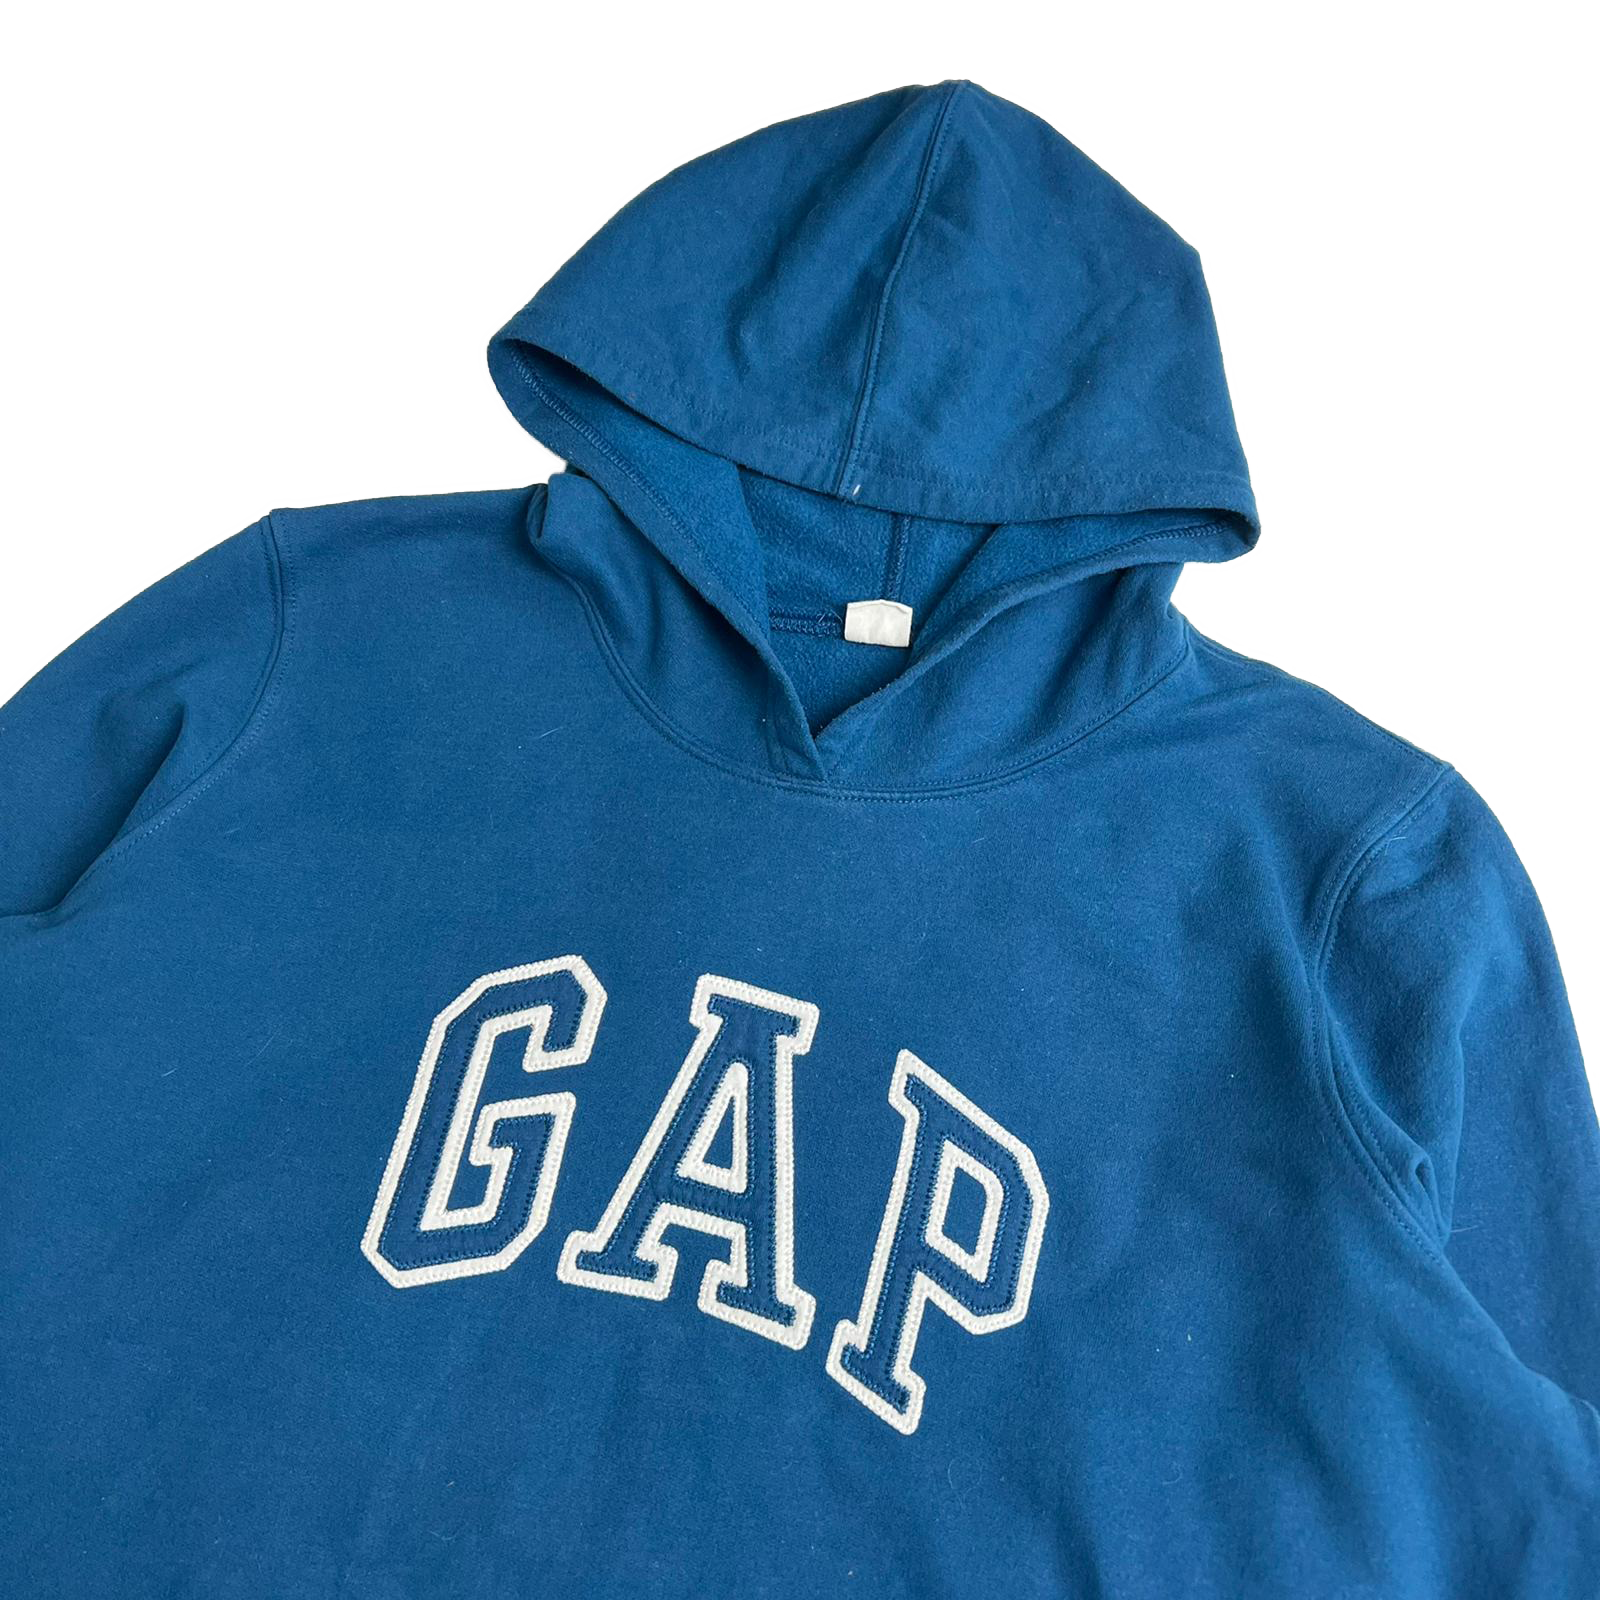 00's GAP hoodie